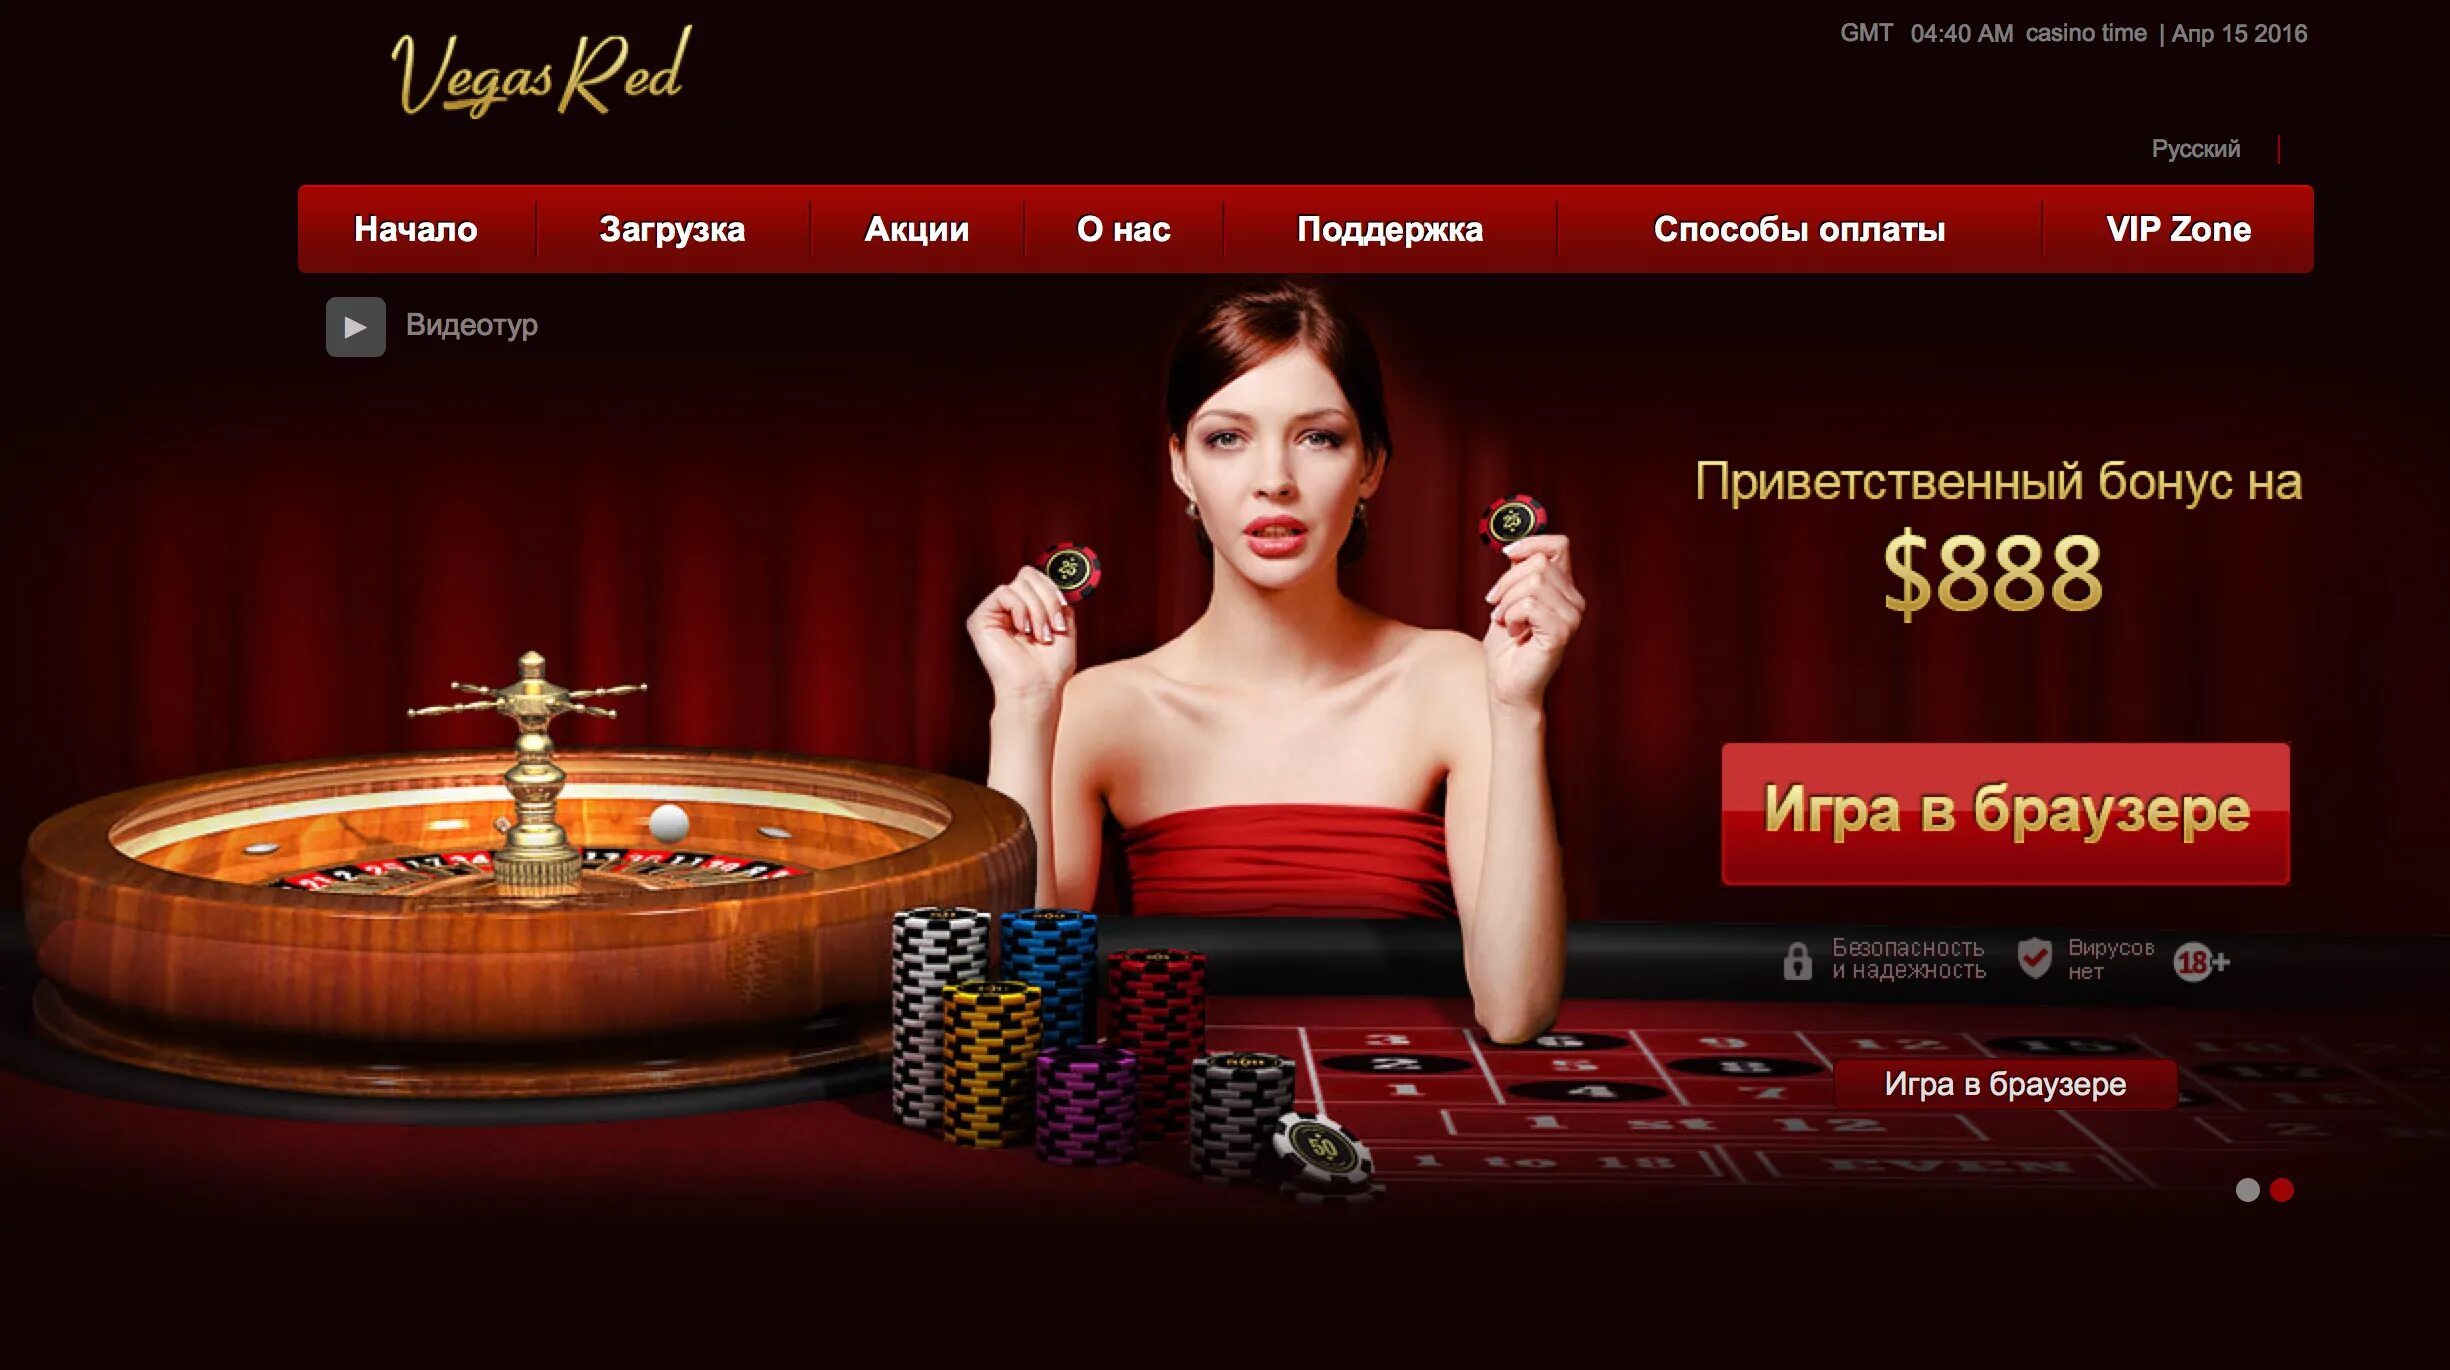 Aurora casino рабочий сайт. Казино. Интернет казино. Сайты казино. Реклама казино.